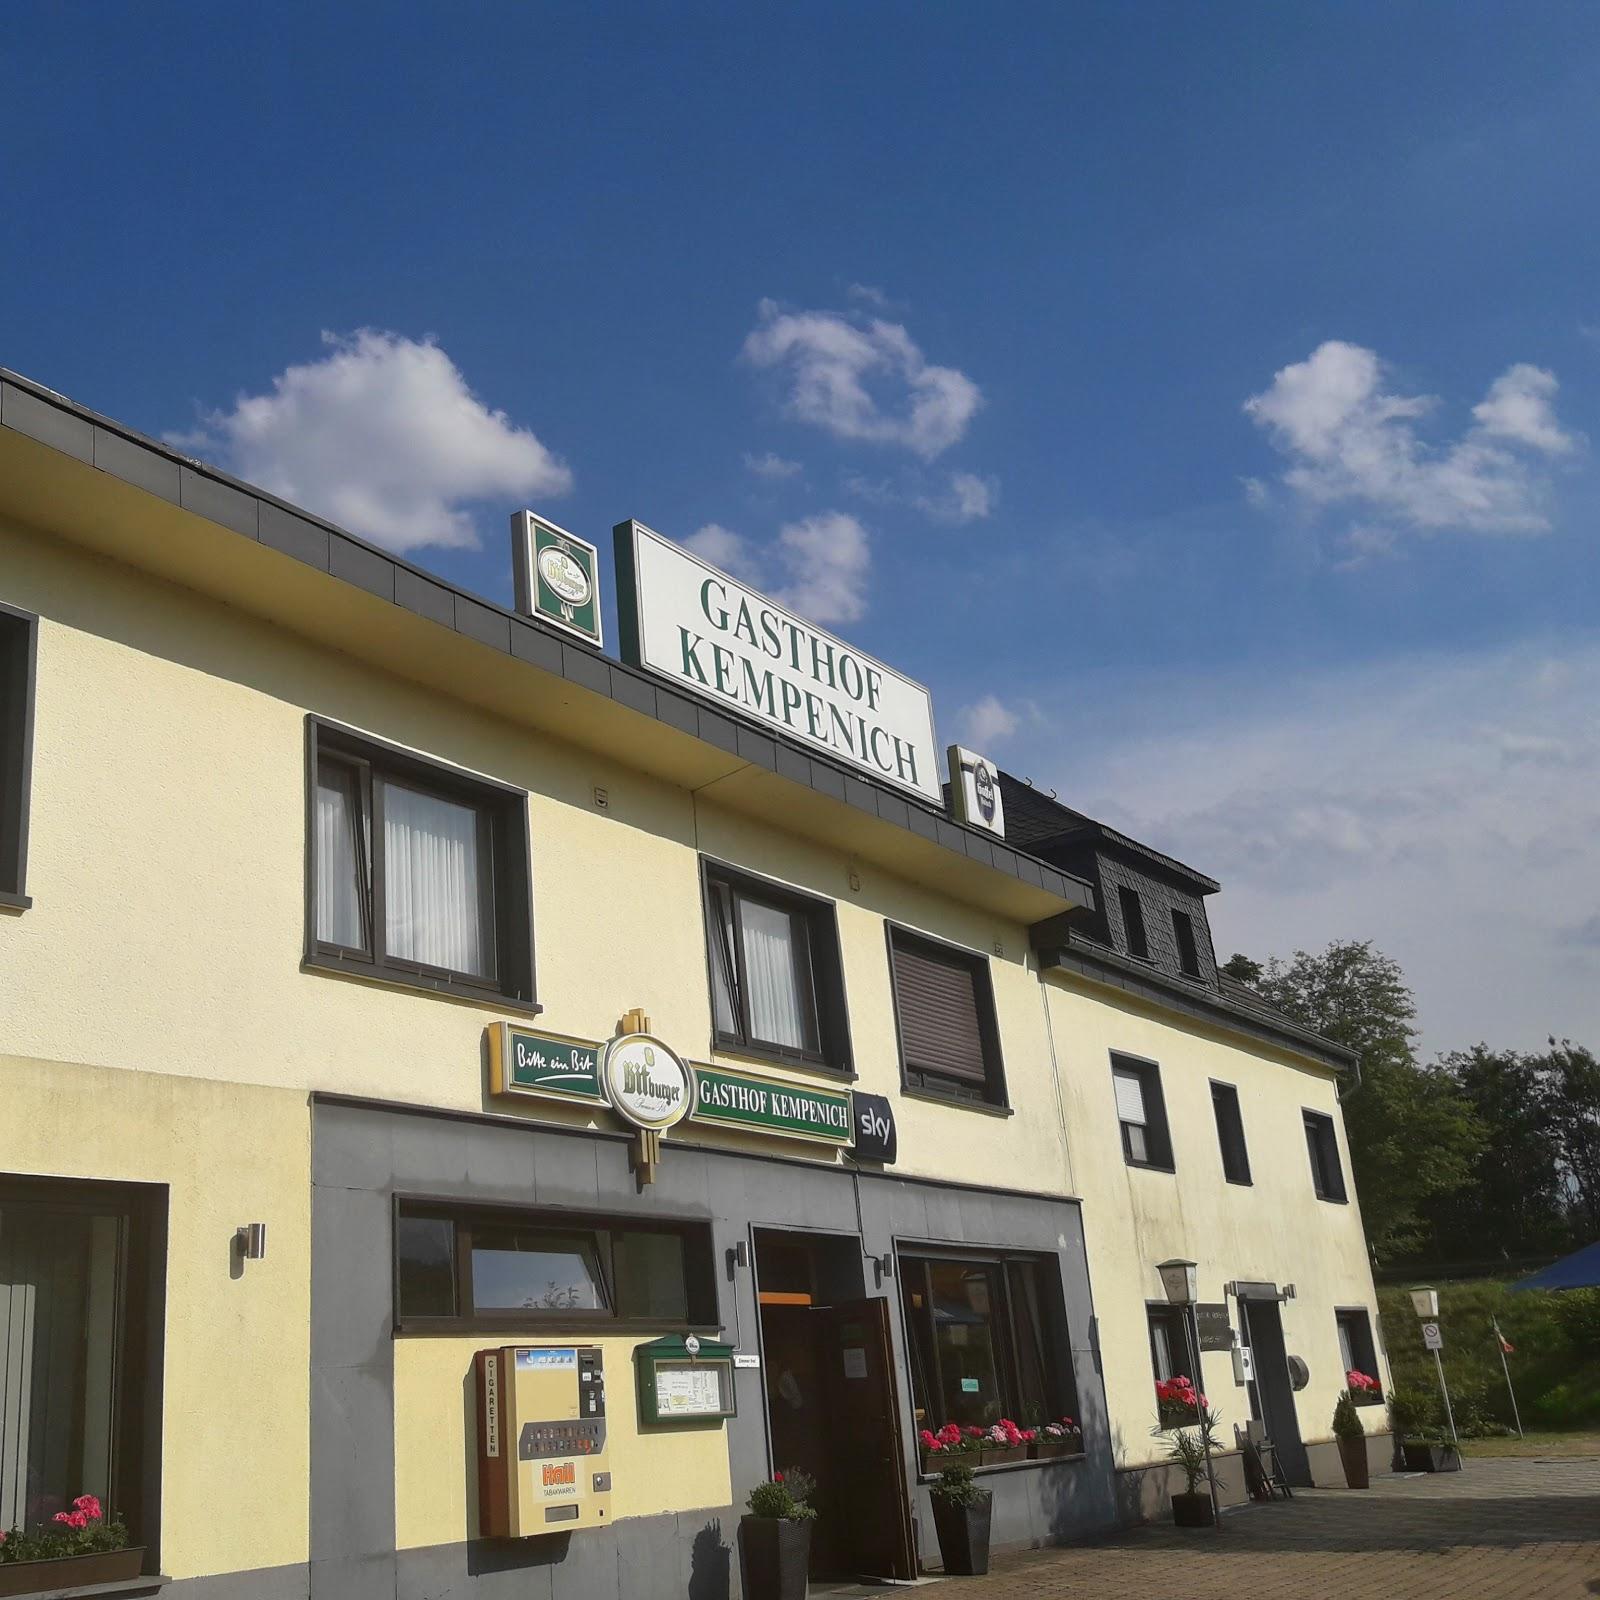 Restaurant "Gasthof" in Kempenich